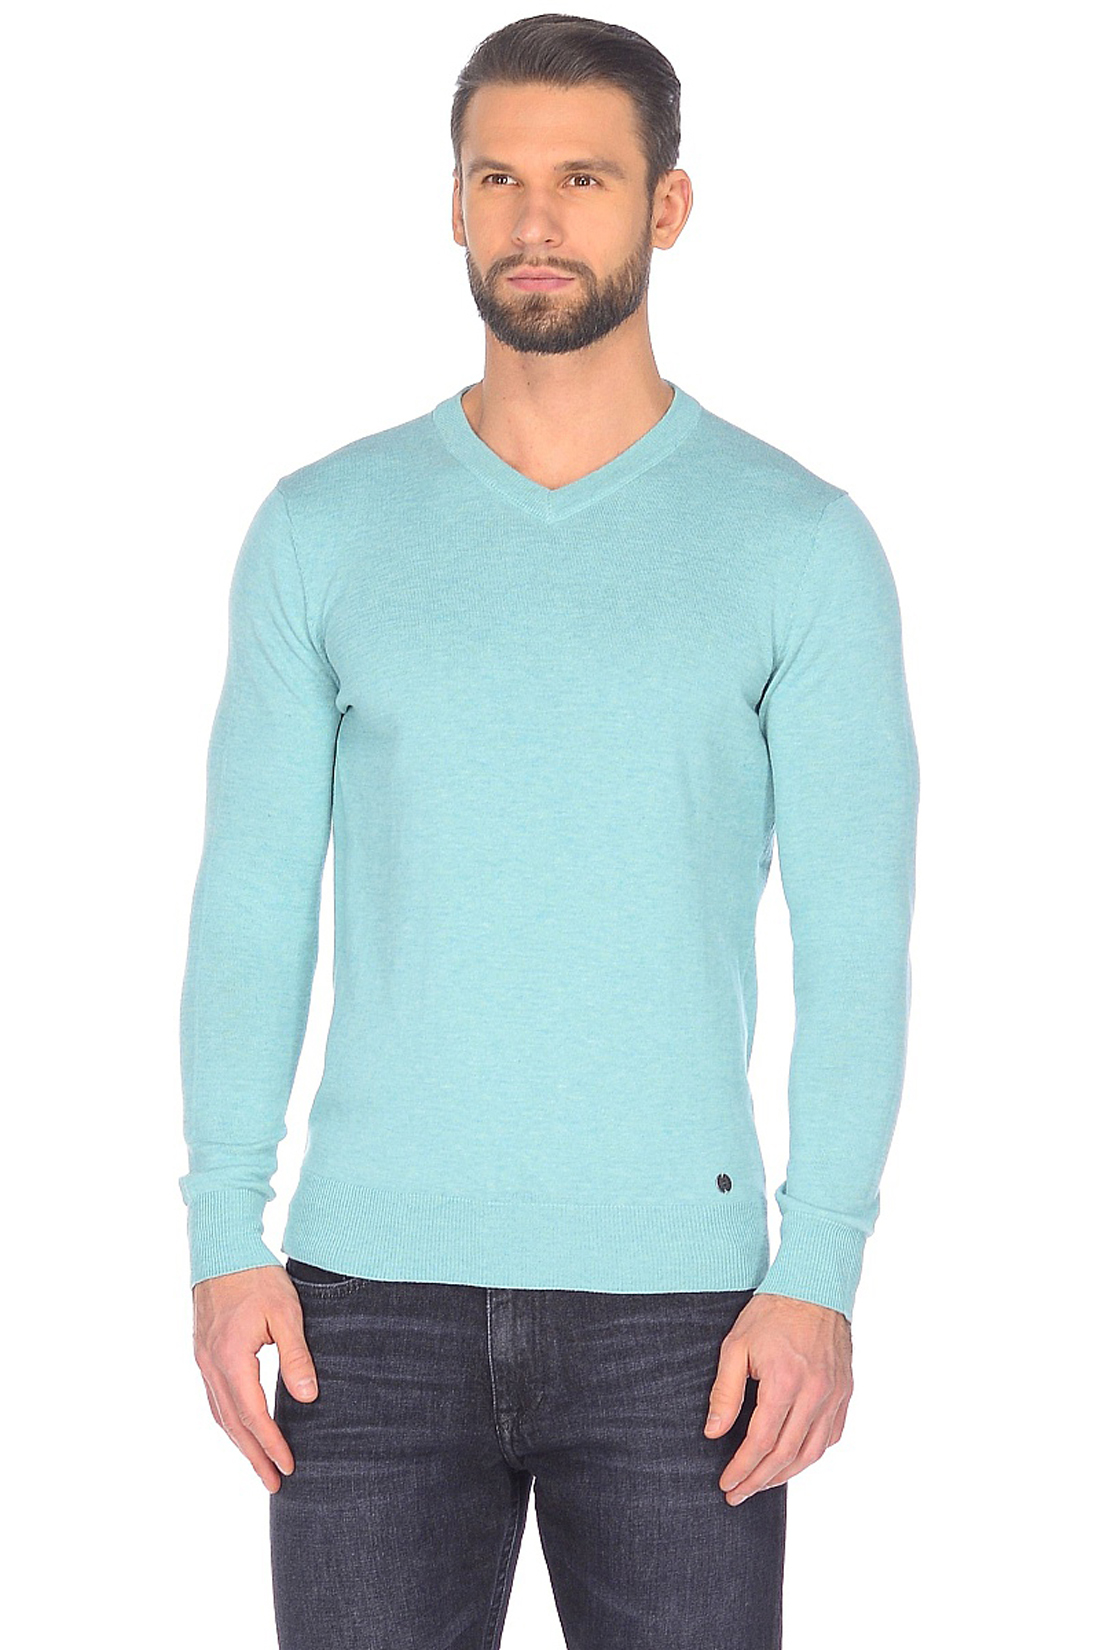 Базовый пуловер (арт. baon B638202), размер XXL, цвет зеленый Базовый пуловер (арт. baon B638202) - фото 1